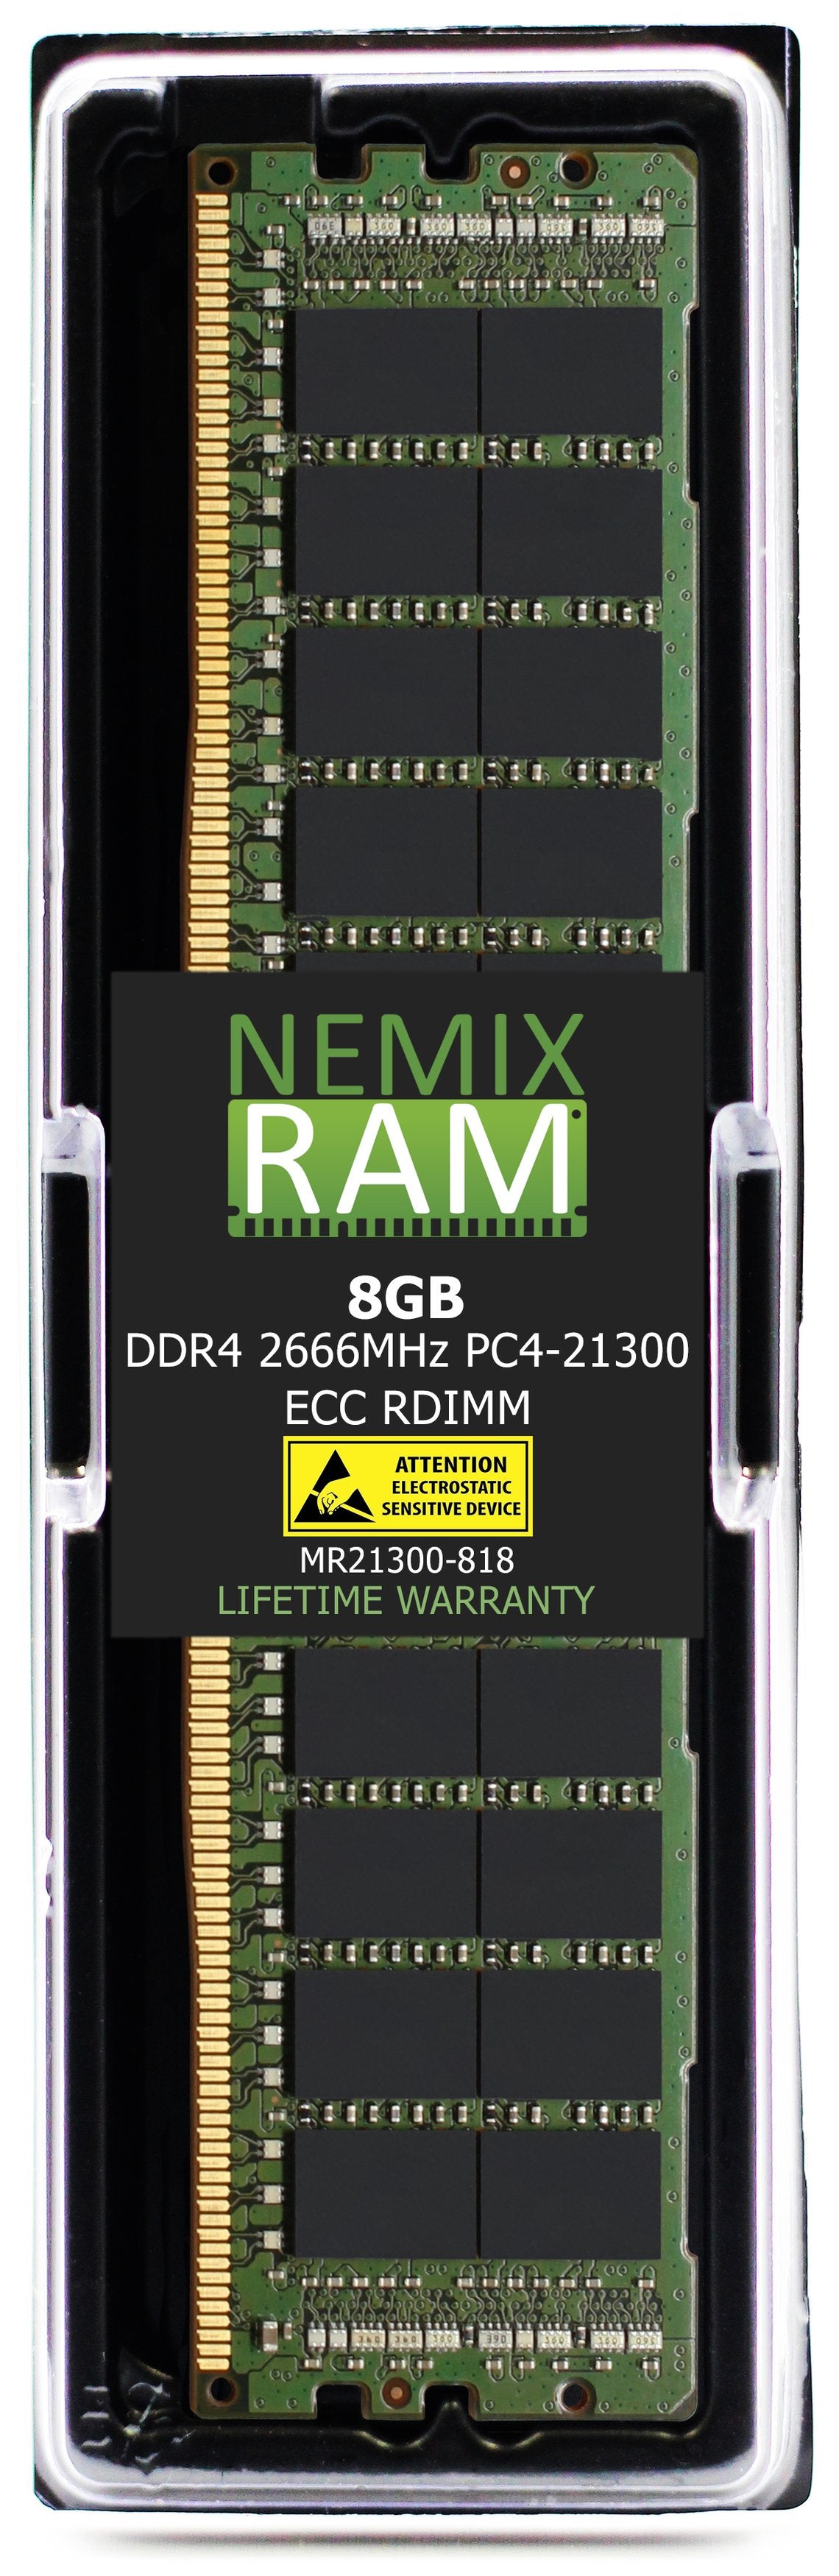 Hynix HMA81GR7AFR8N-VK 8GB DDR4 2666MHZ PC4-21300 RDIMM Compatible Memory Module